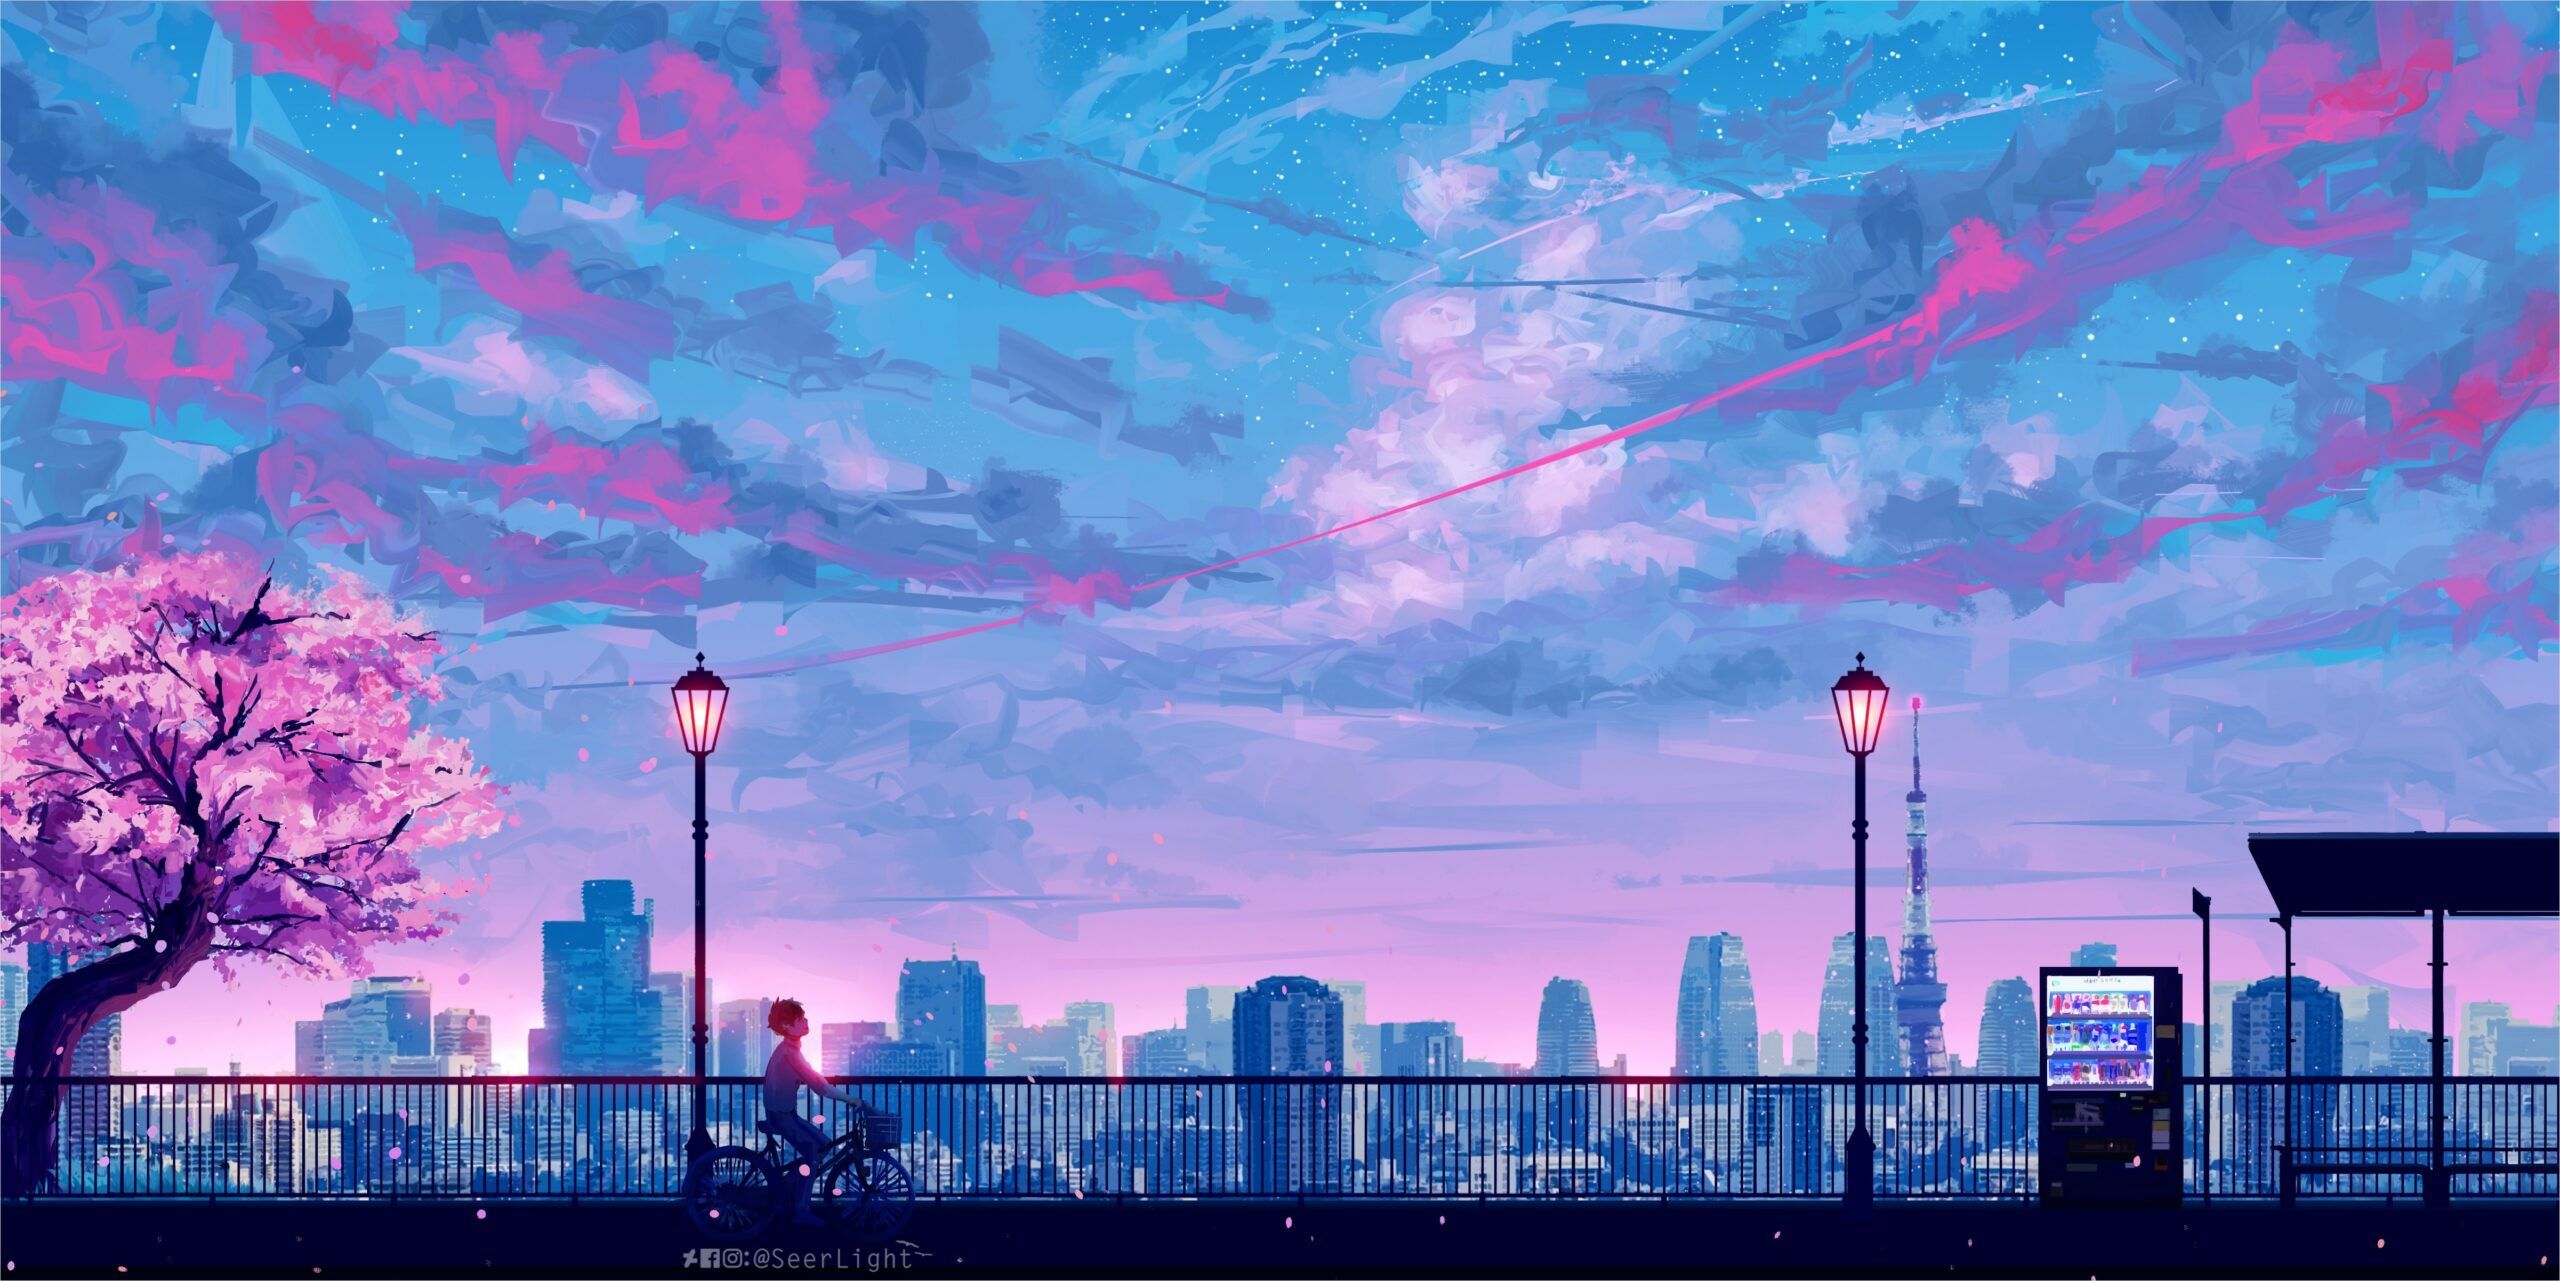 4k Anime Landscape Wallpaper. Aesthetic desktop